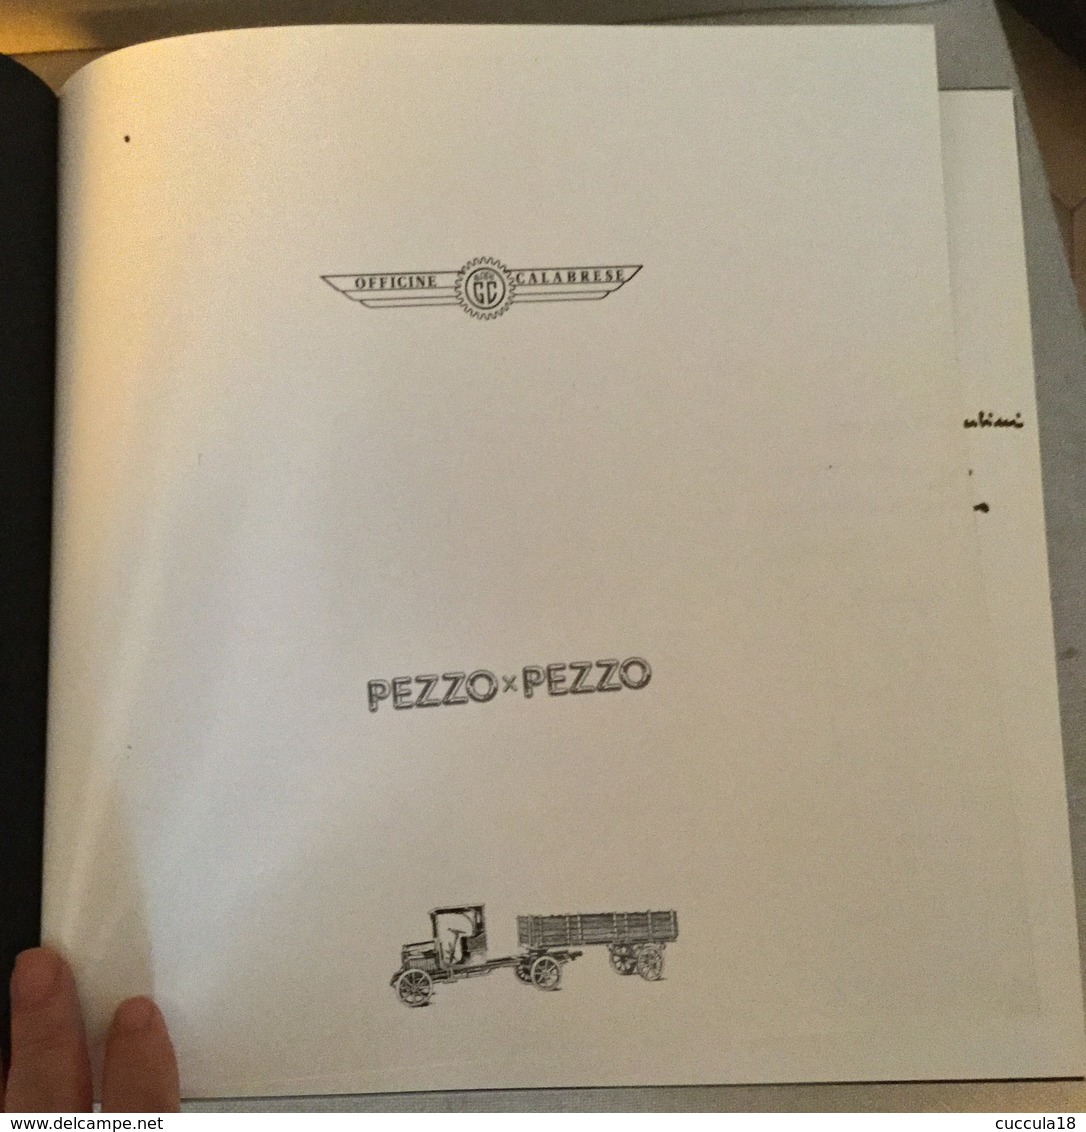 PEZZO X PEZZO - Omaggio A Giuseppe Calabrese - FUORI COMMERCIO - BARI - Società, Politica, Economia